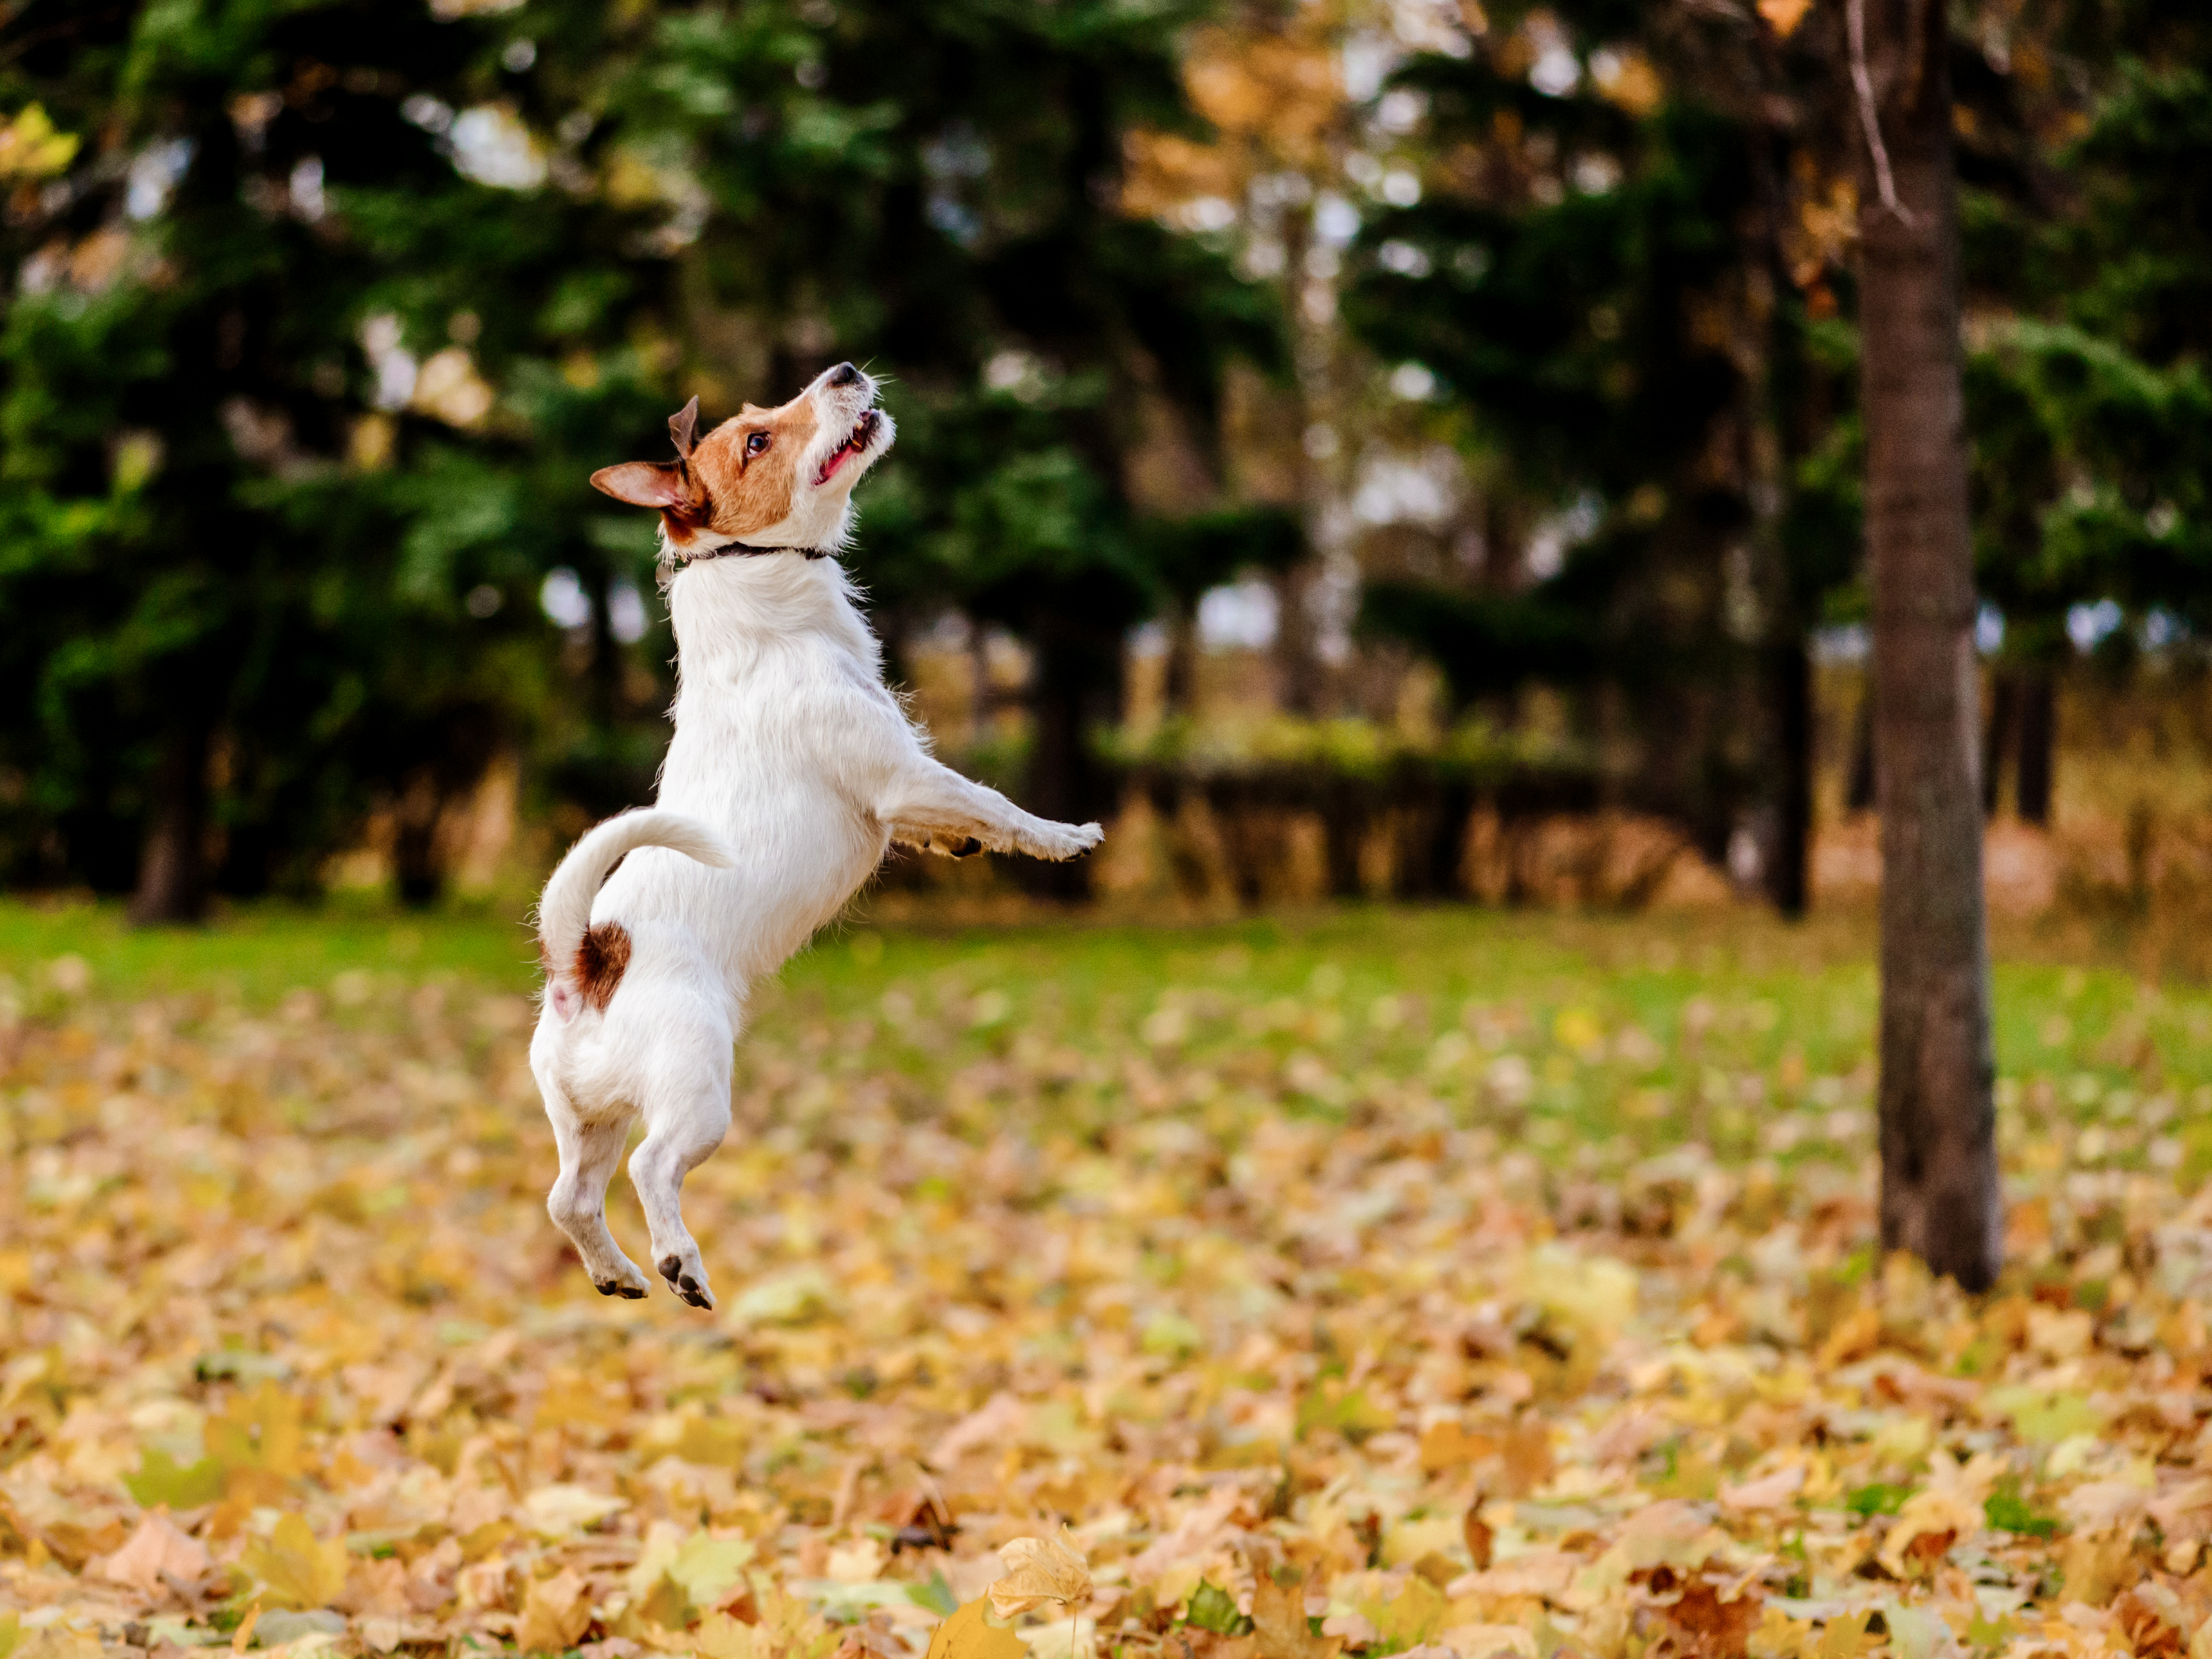 Jack Russel Terrier springend im Park, umgeben von Herbstlaub